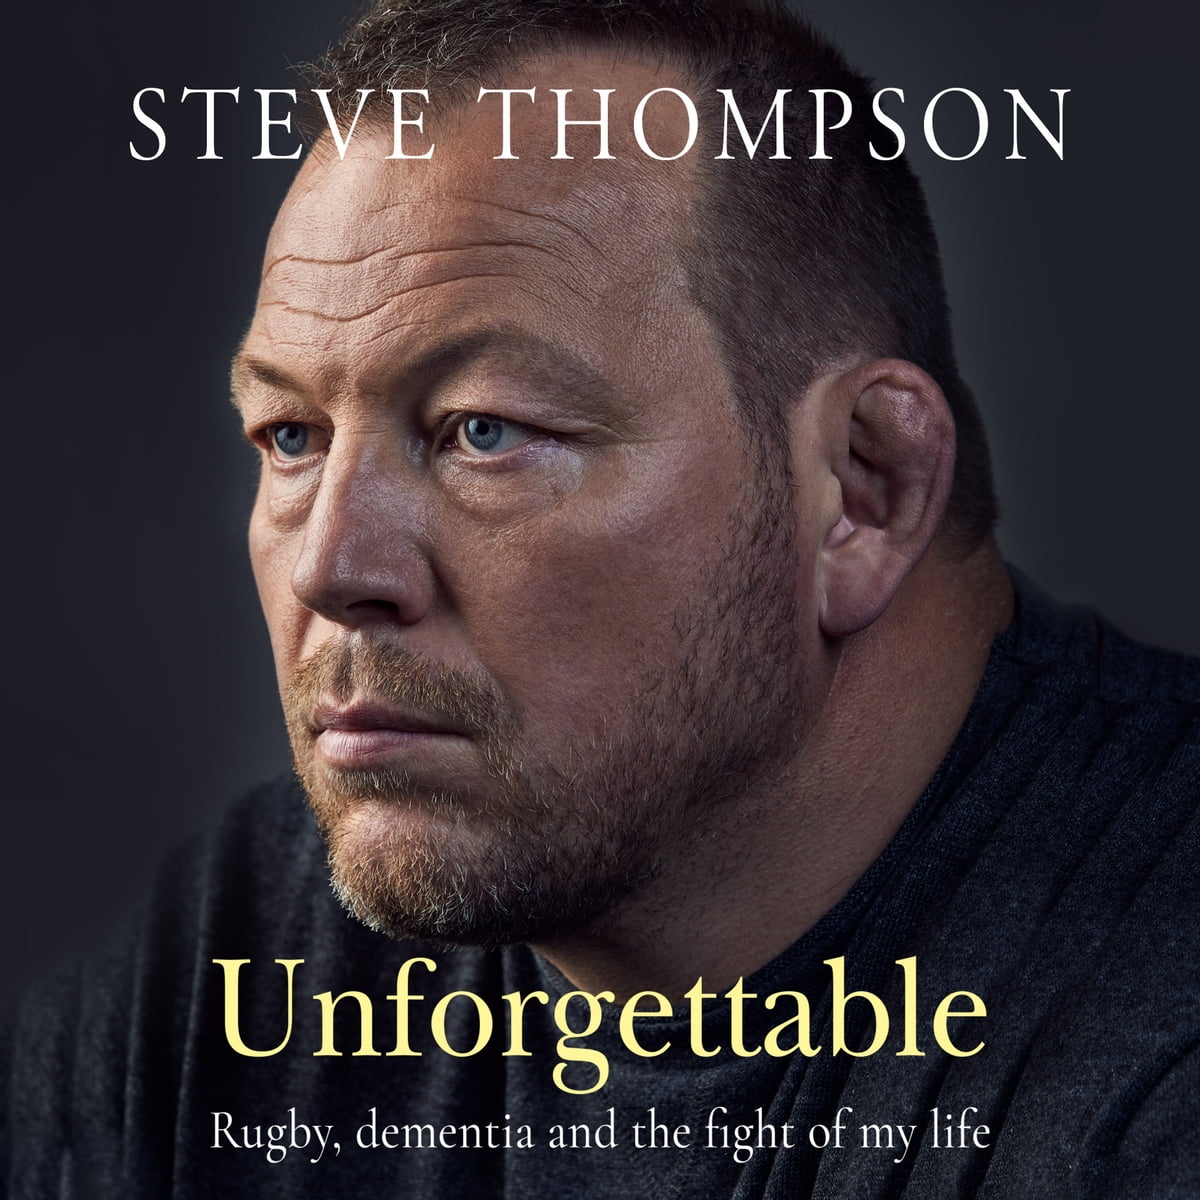 Steve Thompson Unforgettable című könyvének borítója.